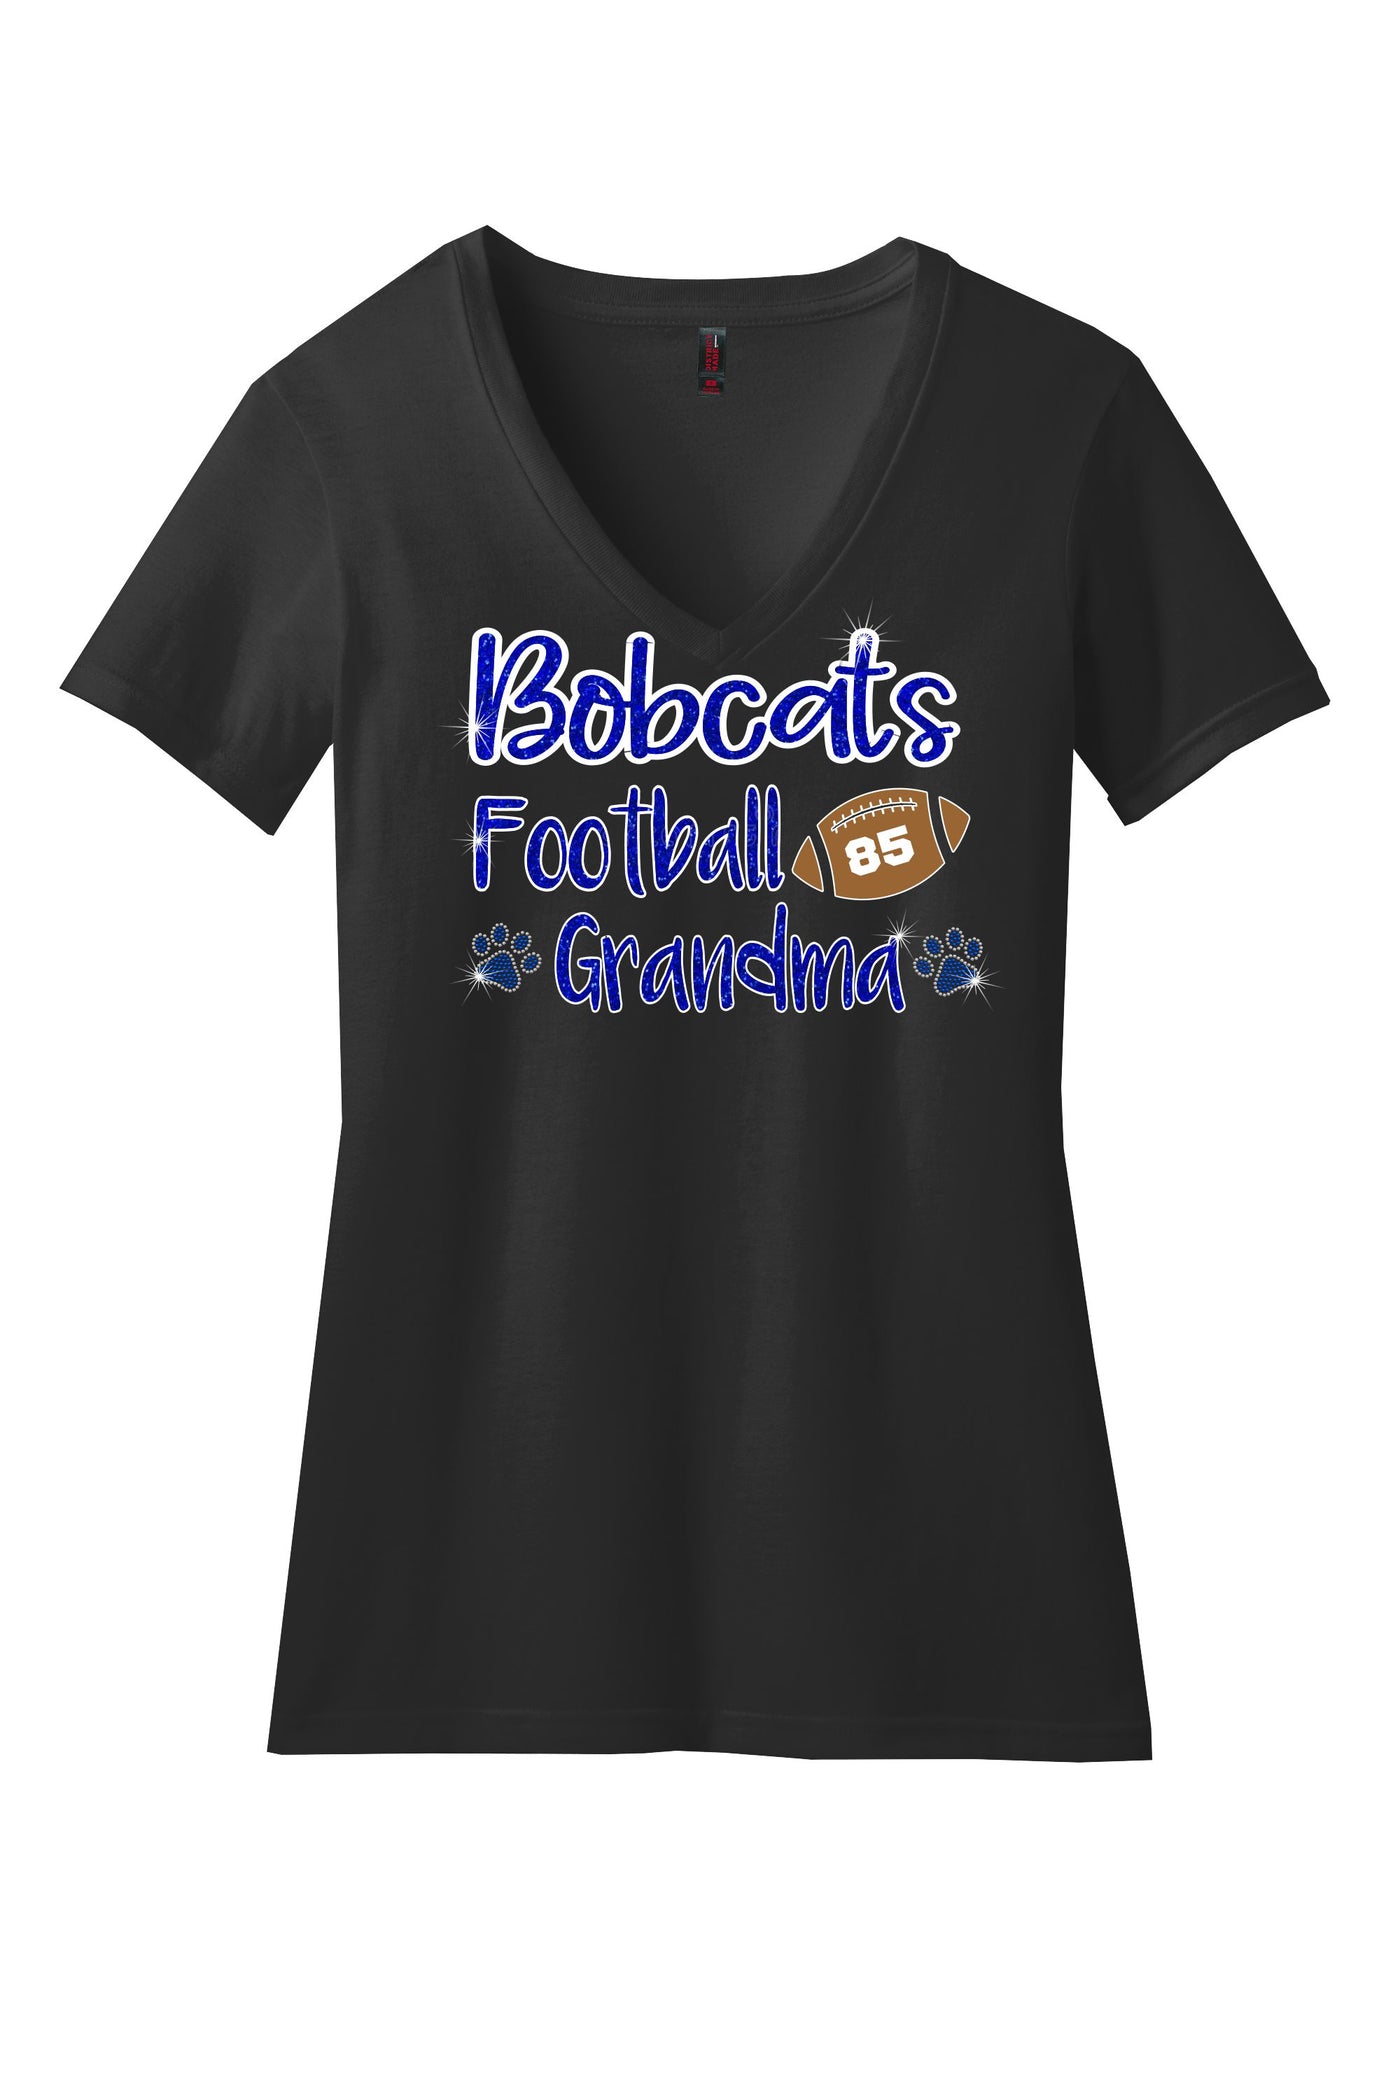 Bobcat FOOTBALL Grandma V-Neck Shirt